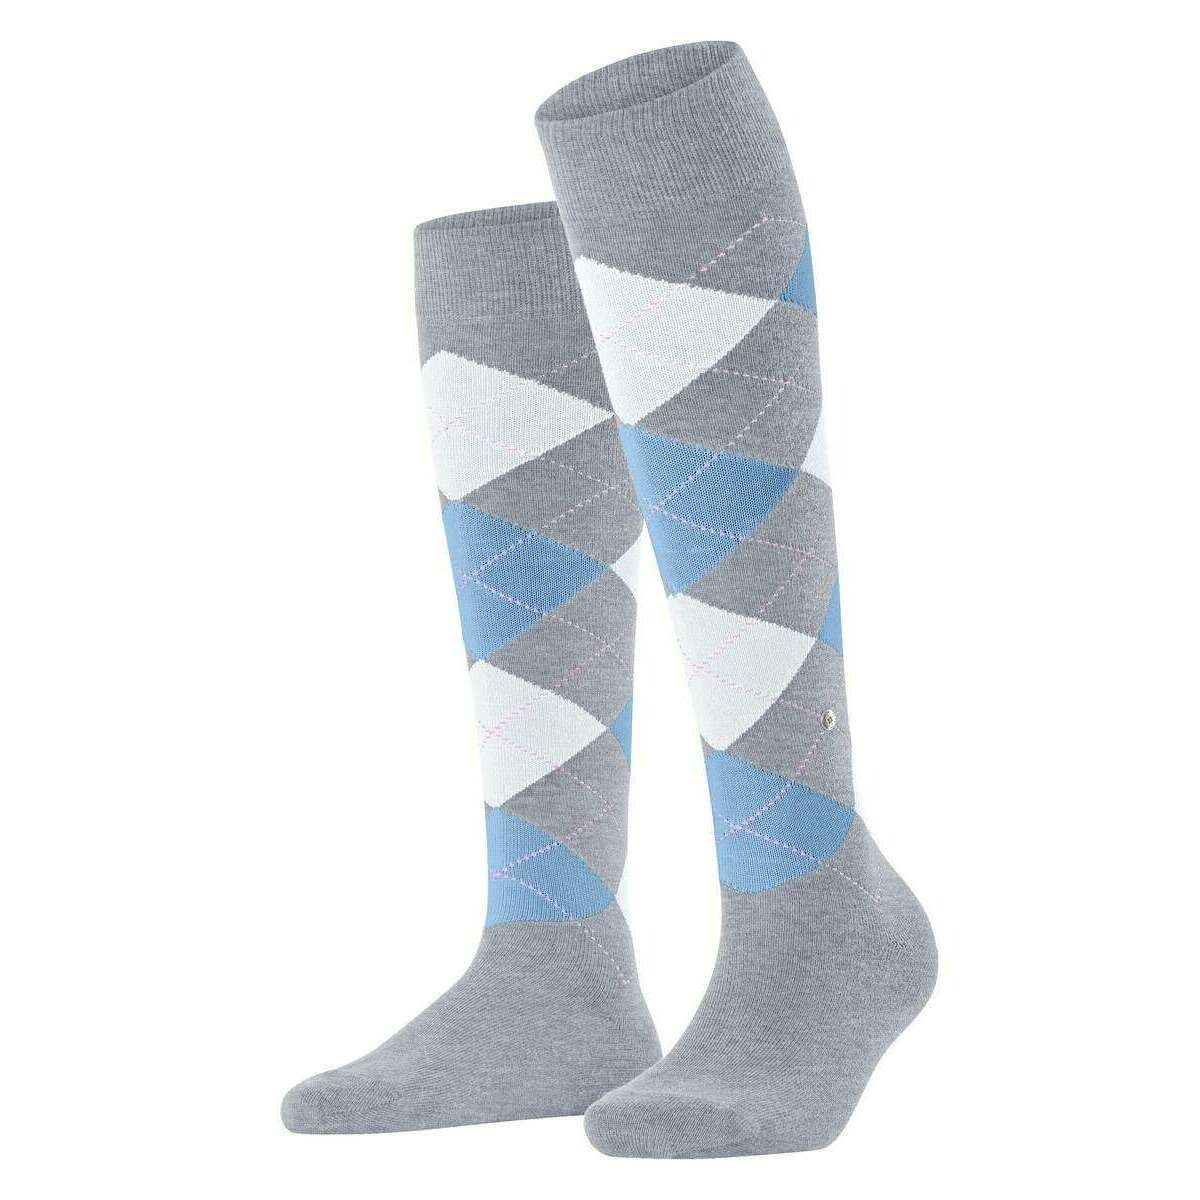 Burlington Queen Knee High Socks - Artic Grey/Blue